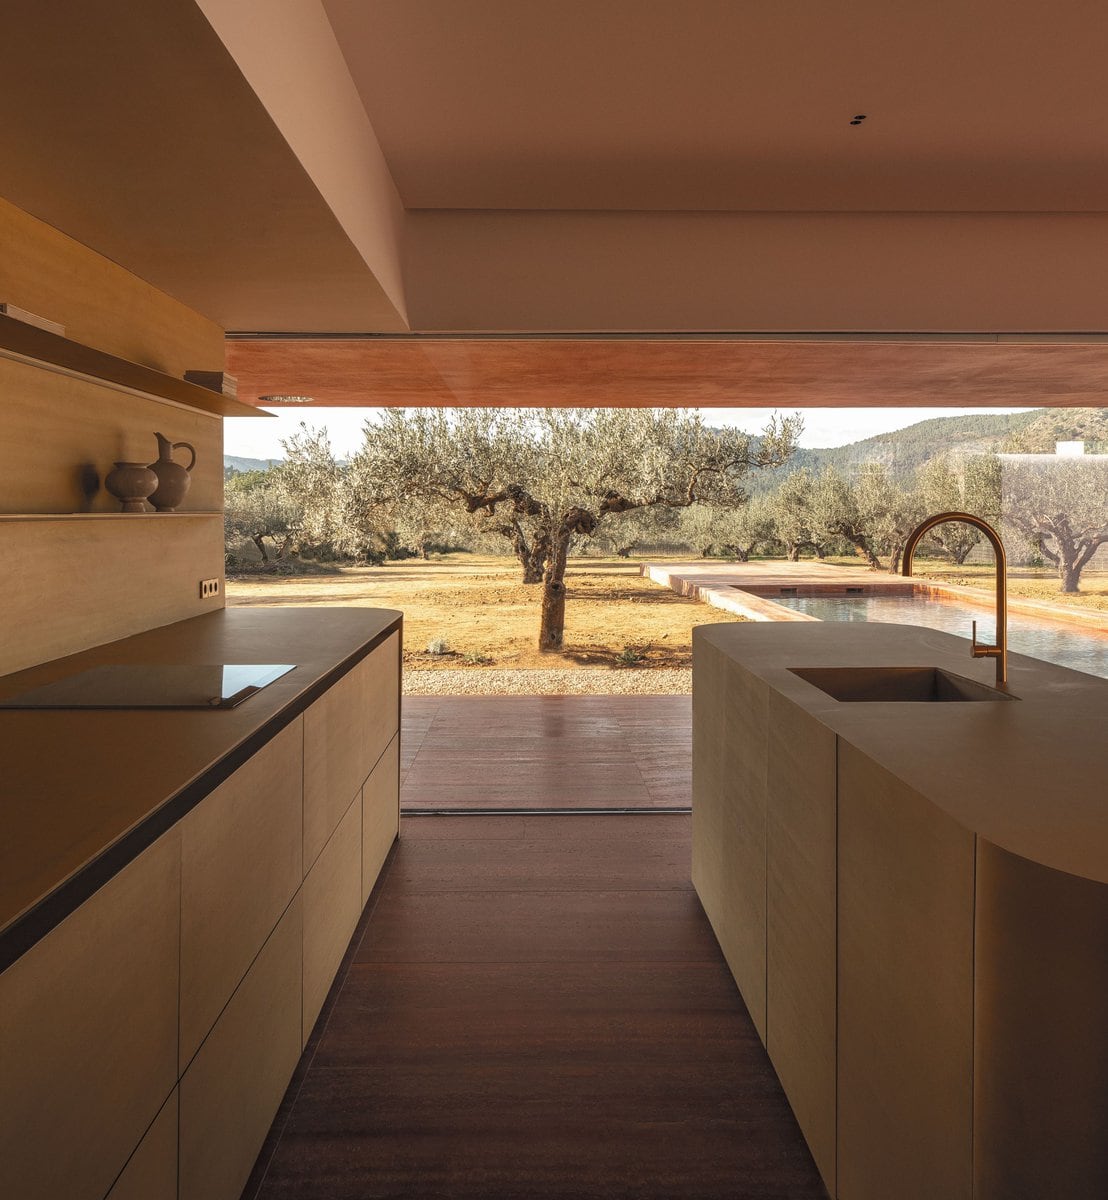 Die bronzefarbene Küche ist der Blickfang des Hauses. Zwischen harmonischen Materialien, Farben und Textilien setzt die Kücheninsel ein Statement.